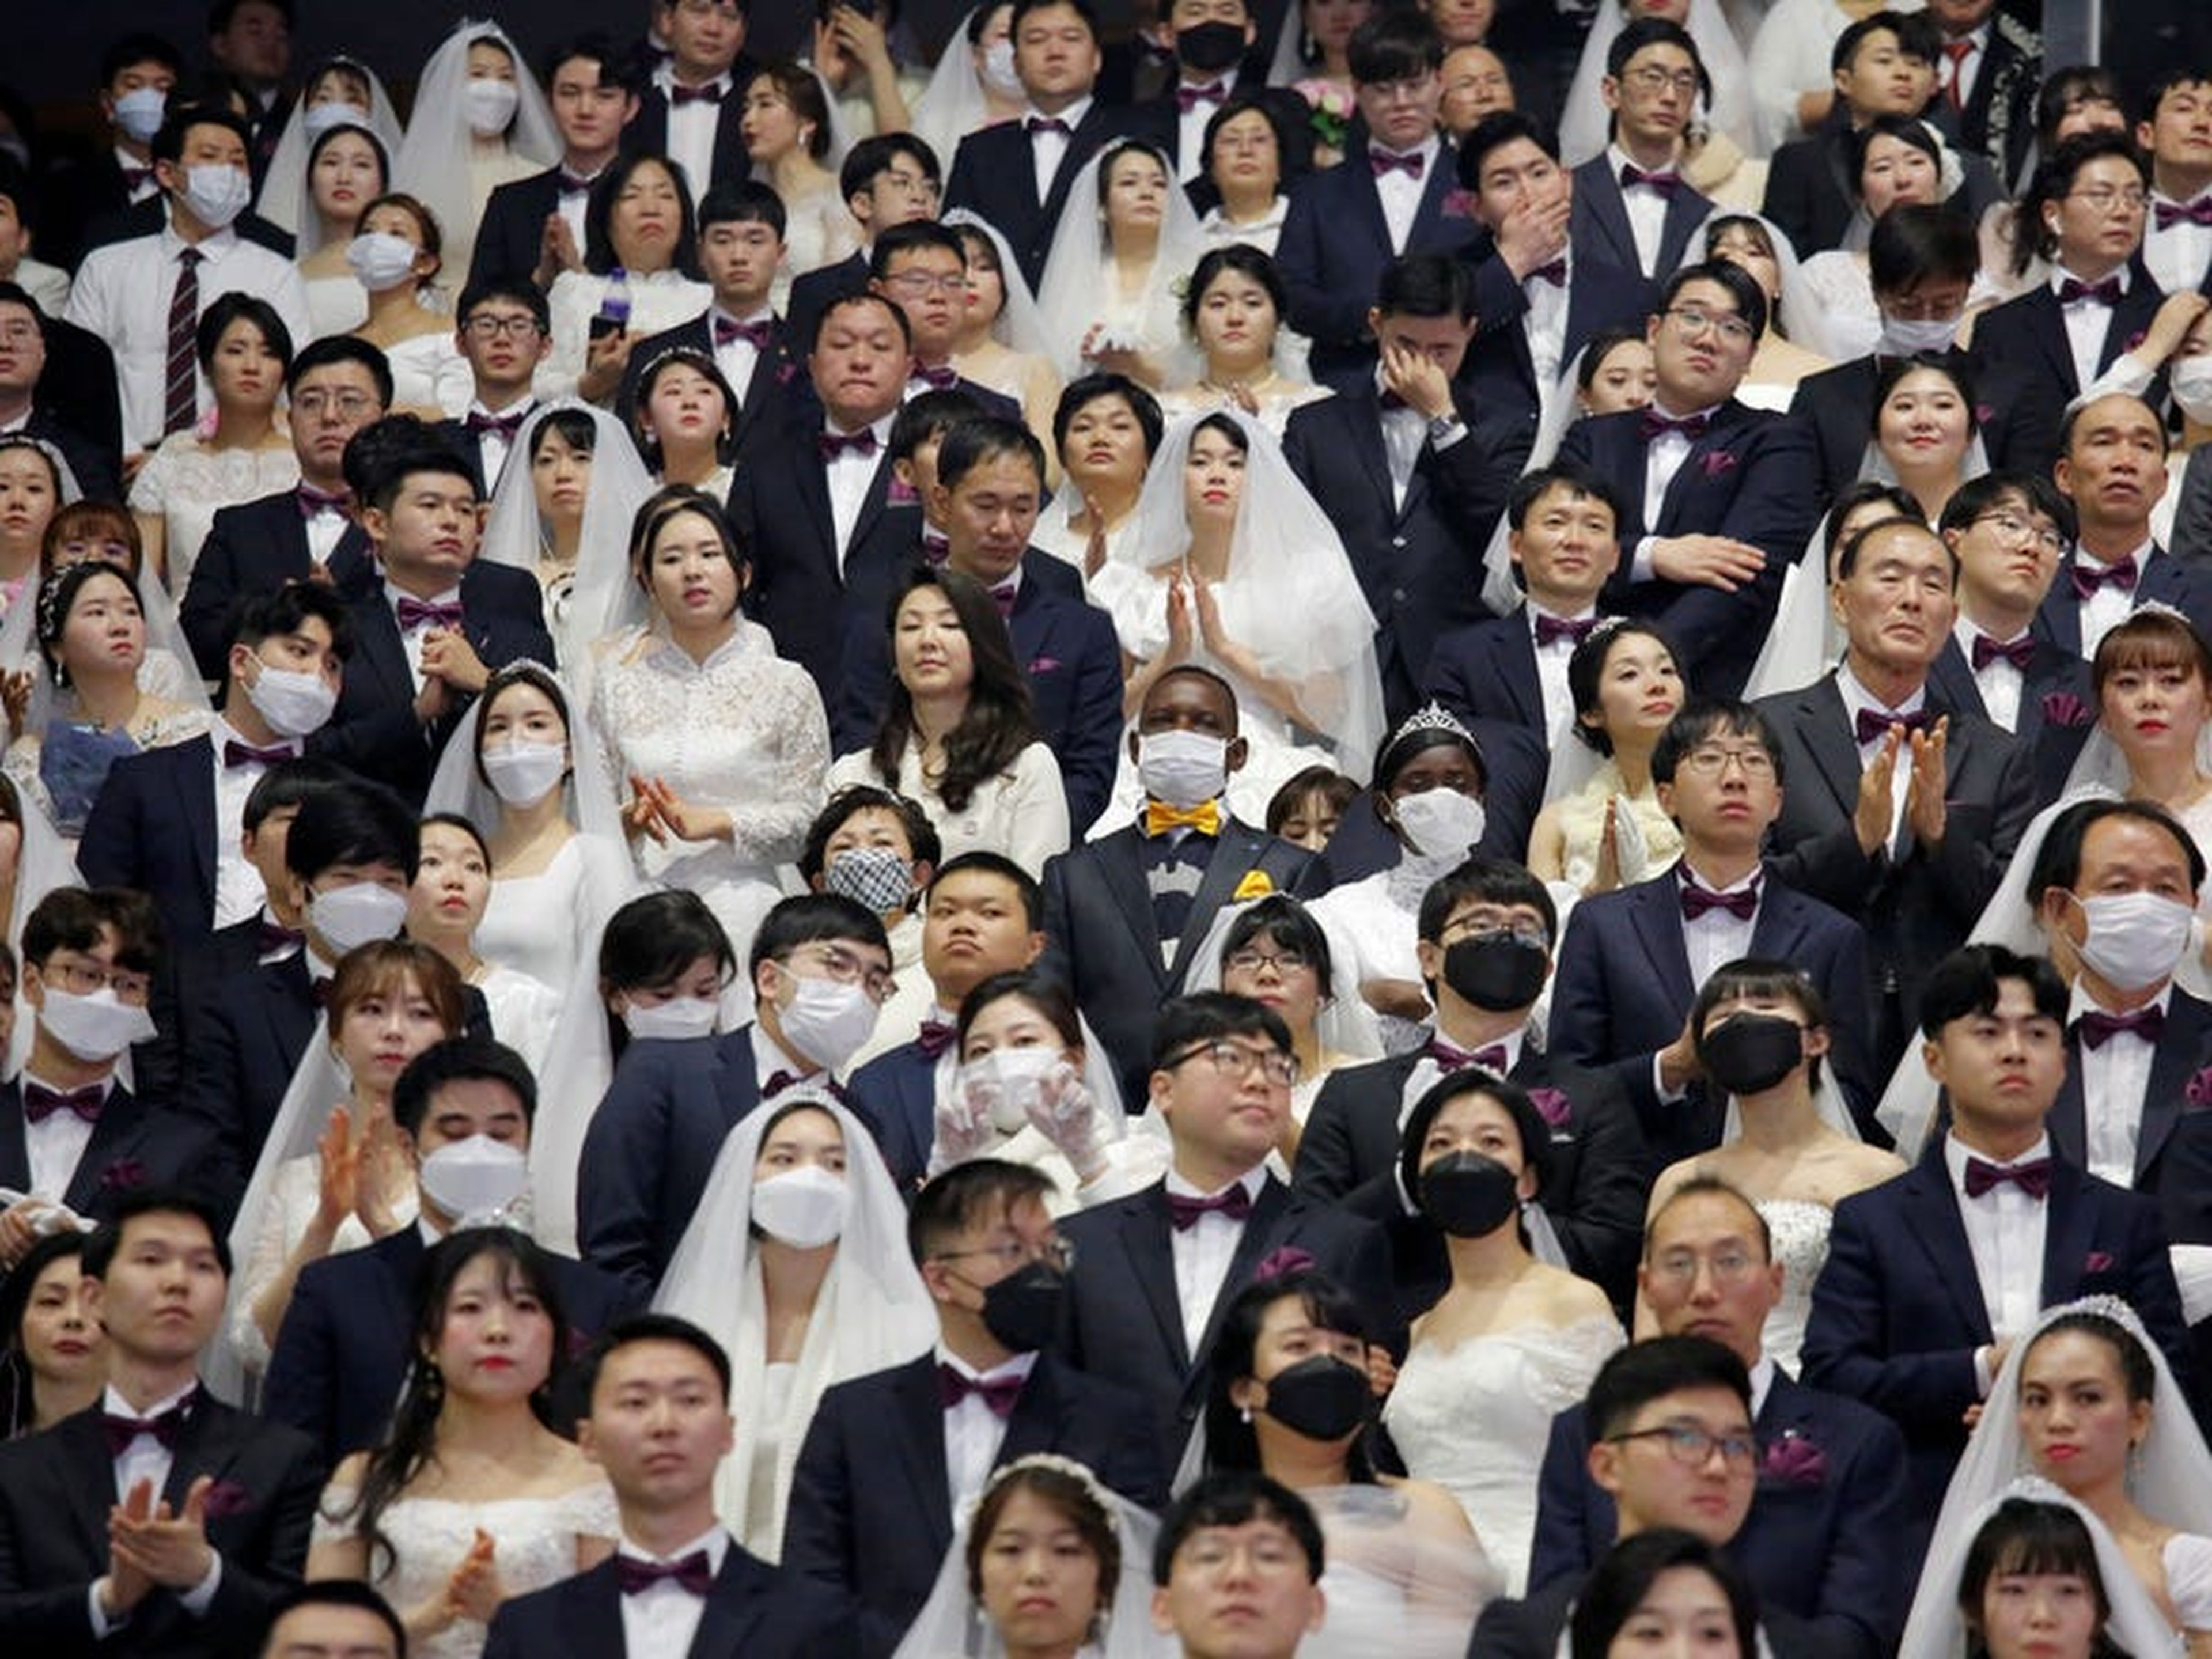 Boda con muchísimos invitados celebrada en la Iglesia de la Unificación en Gapyeong el 20 de febrero de 2020.